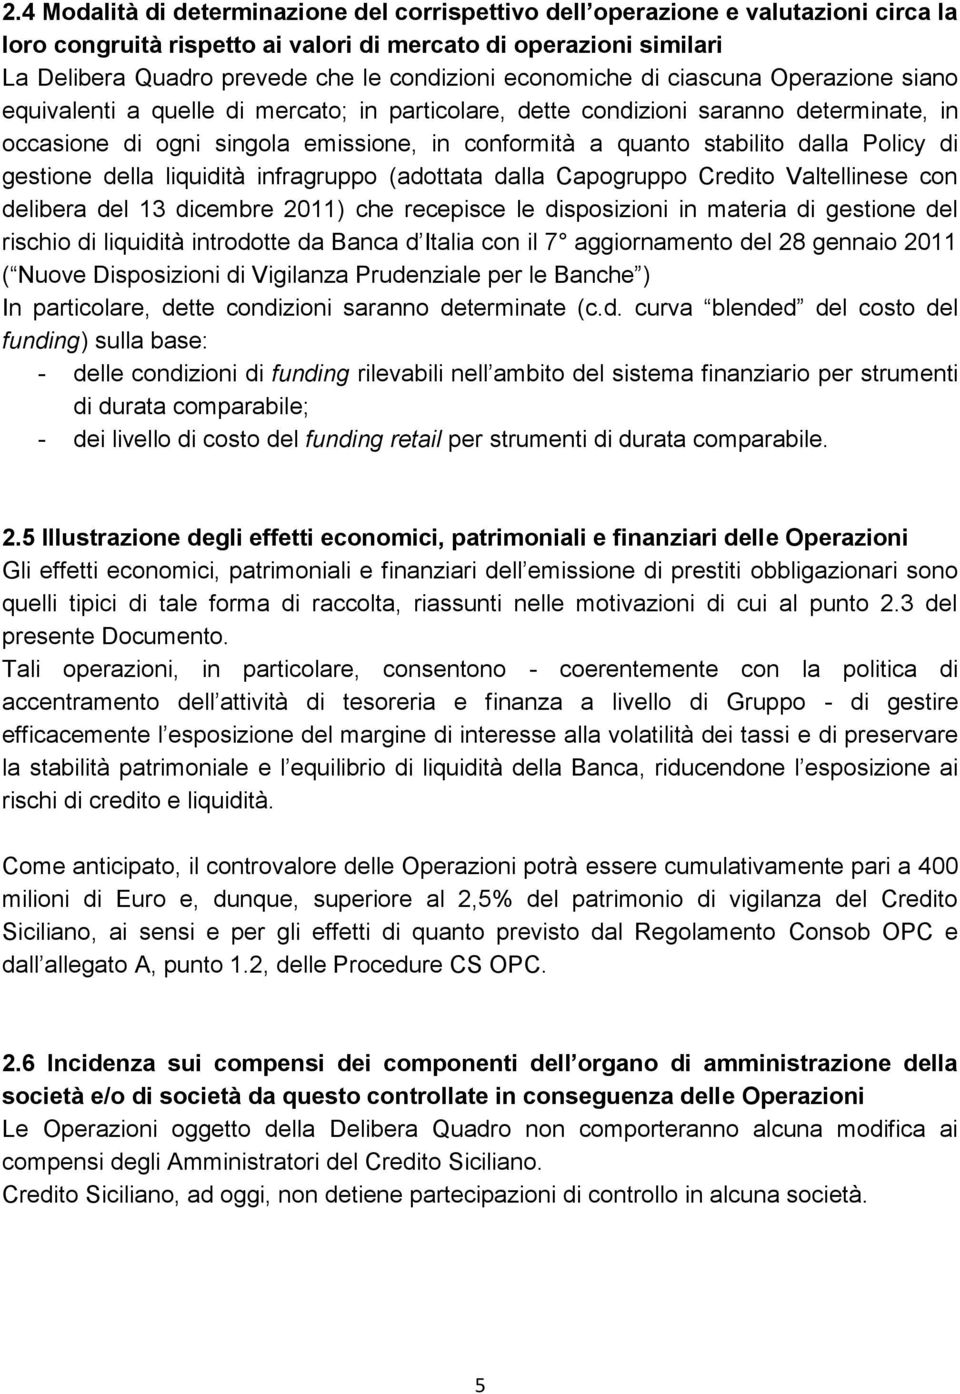 quanto stabilito dalla Policy di gestione della liquidità infragruppo (adottata dalla Capogruppo Credito Valtellinese con delibera del 13 dicembre 2011) che recepisce le disposizioni in materia di